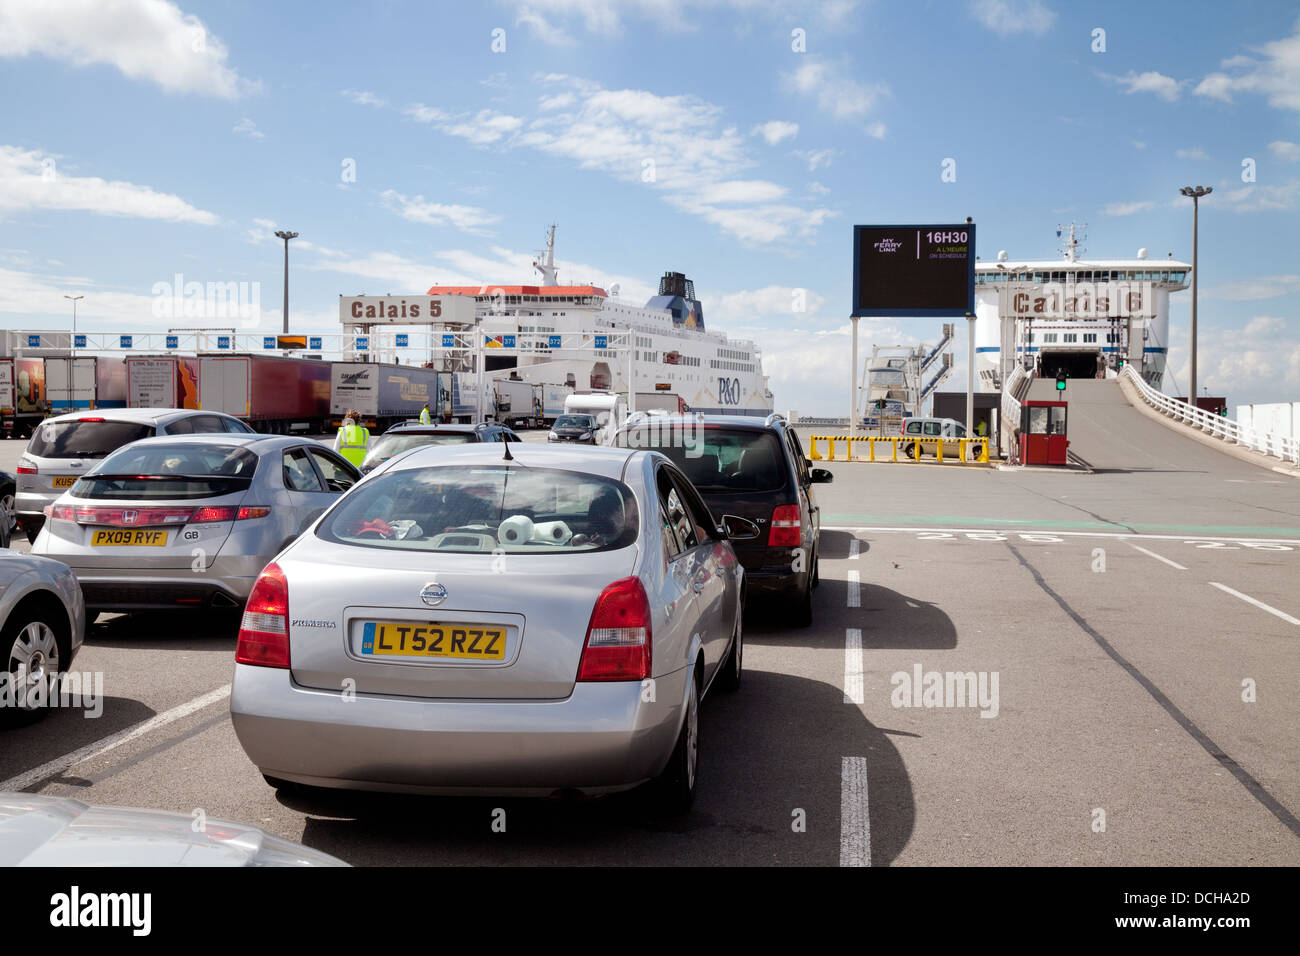 En attendant l'embarquement des voitures le car-ferry pour la traversée de la manche, à Calais Port, Calais à Douvres, itinéraire, France Europe Banque D'Images